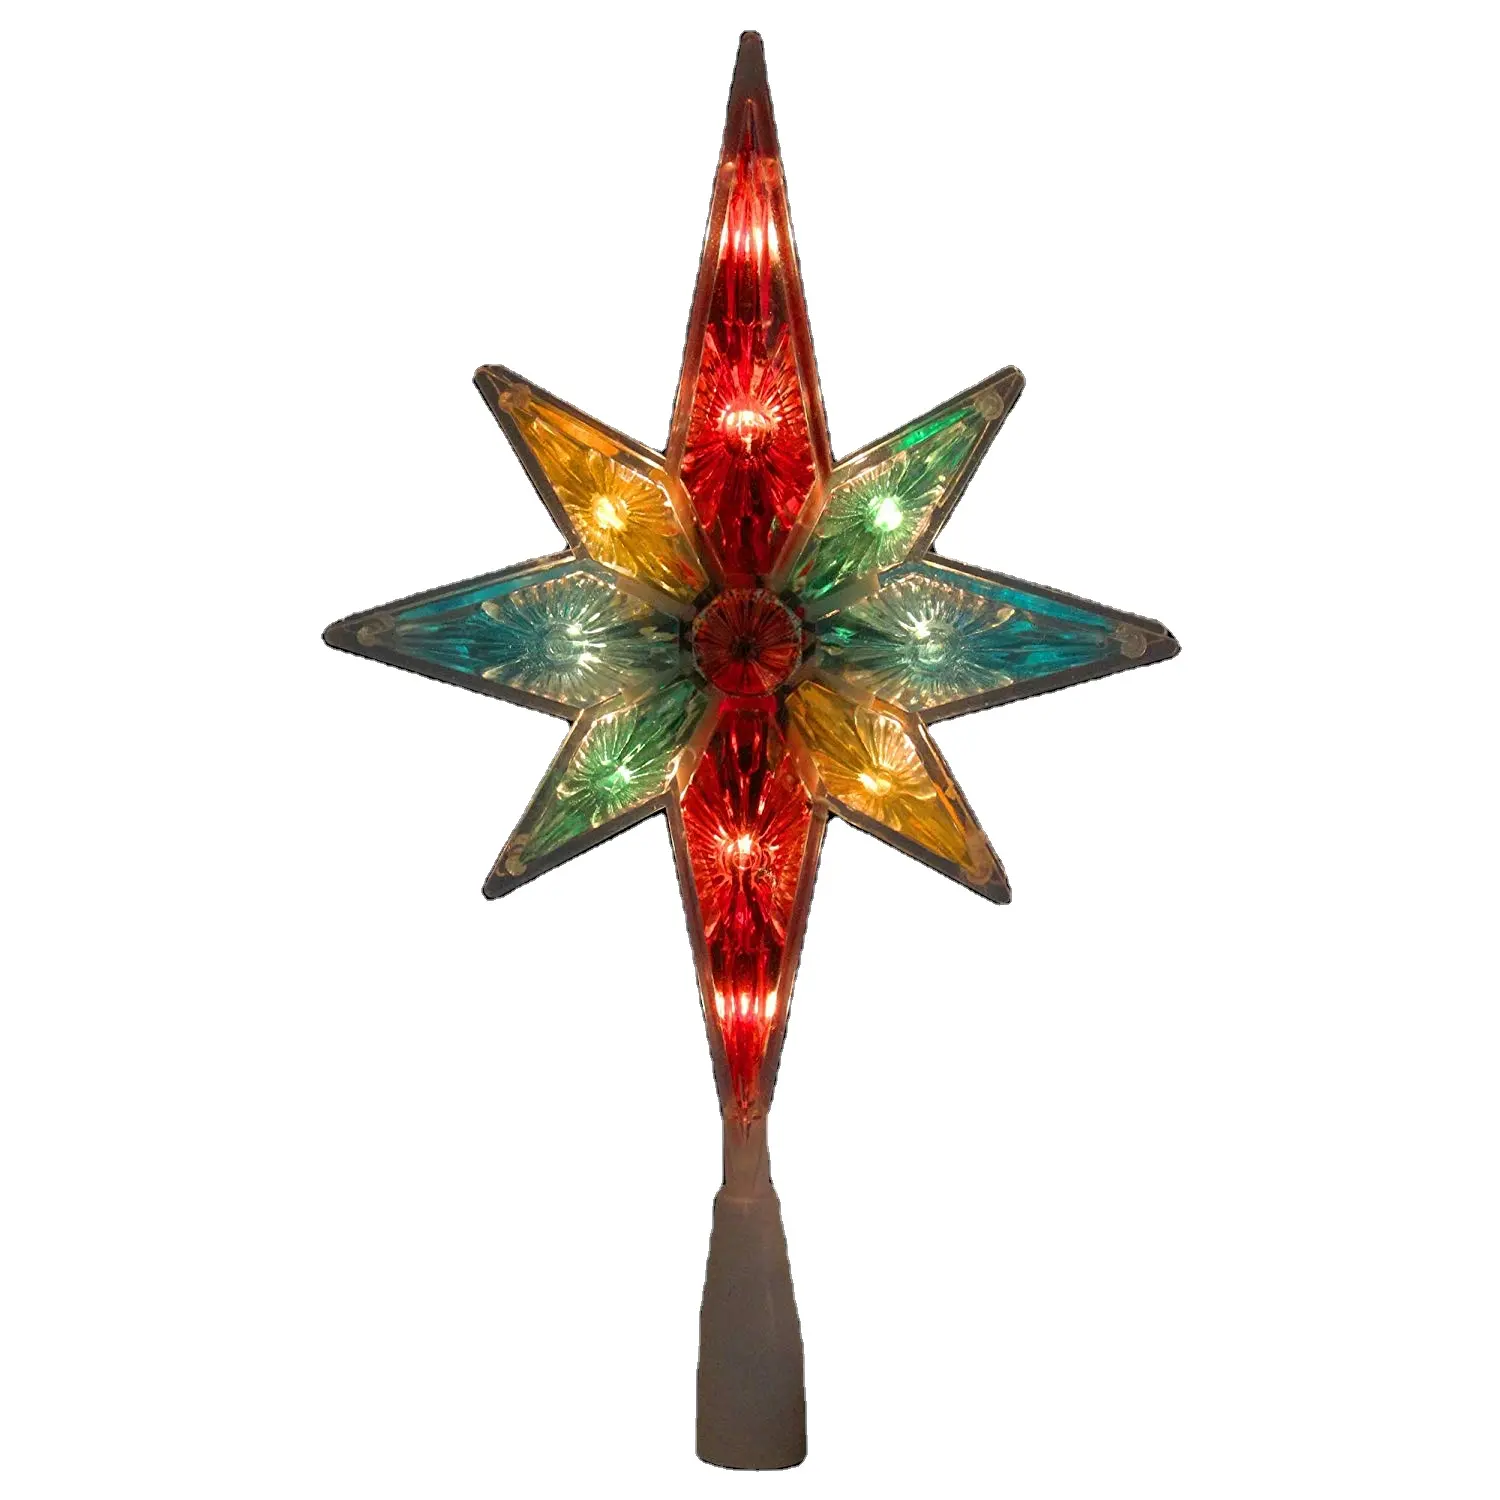 UL 11 "Bintang Bersegi Warna-warni dari Betlehem Pohon Natal Puncak dengan 10 Lampu